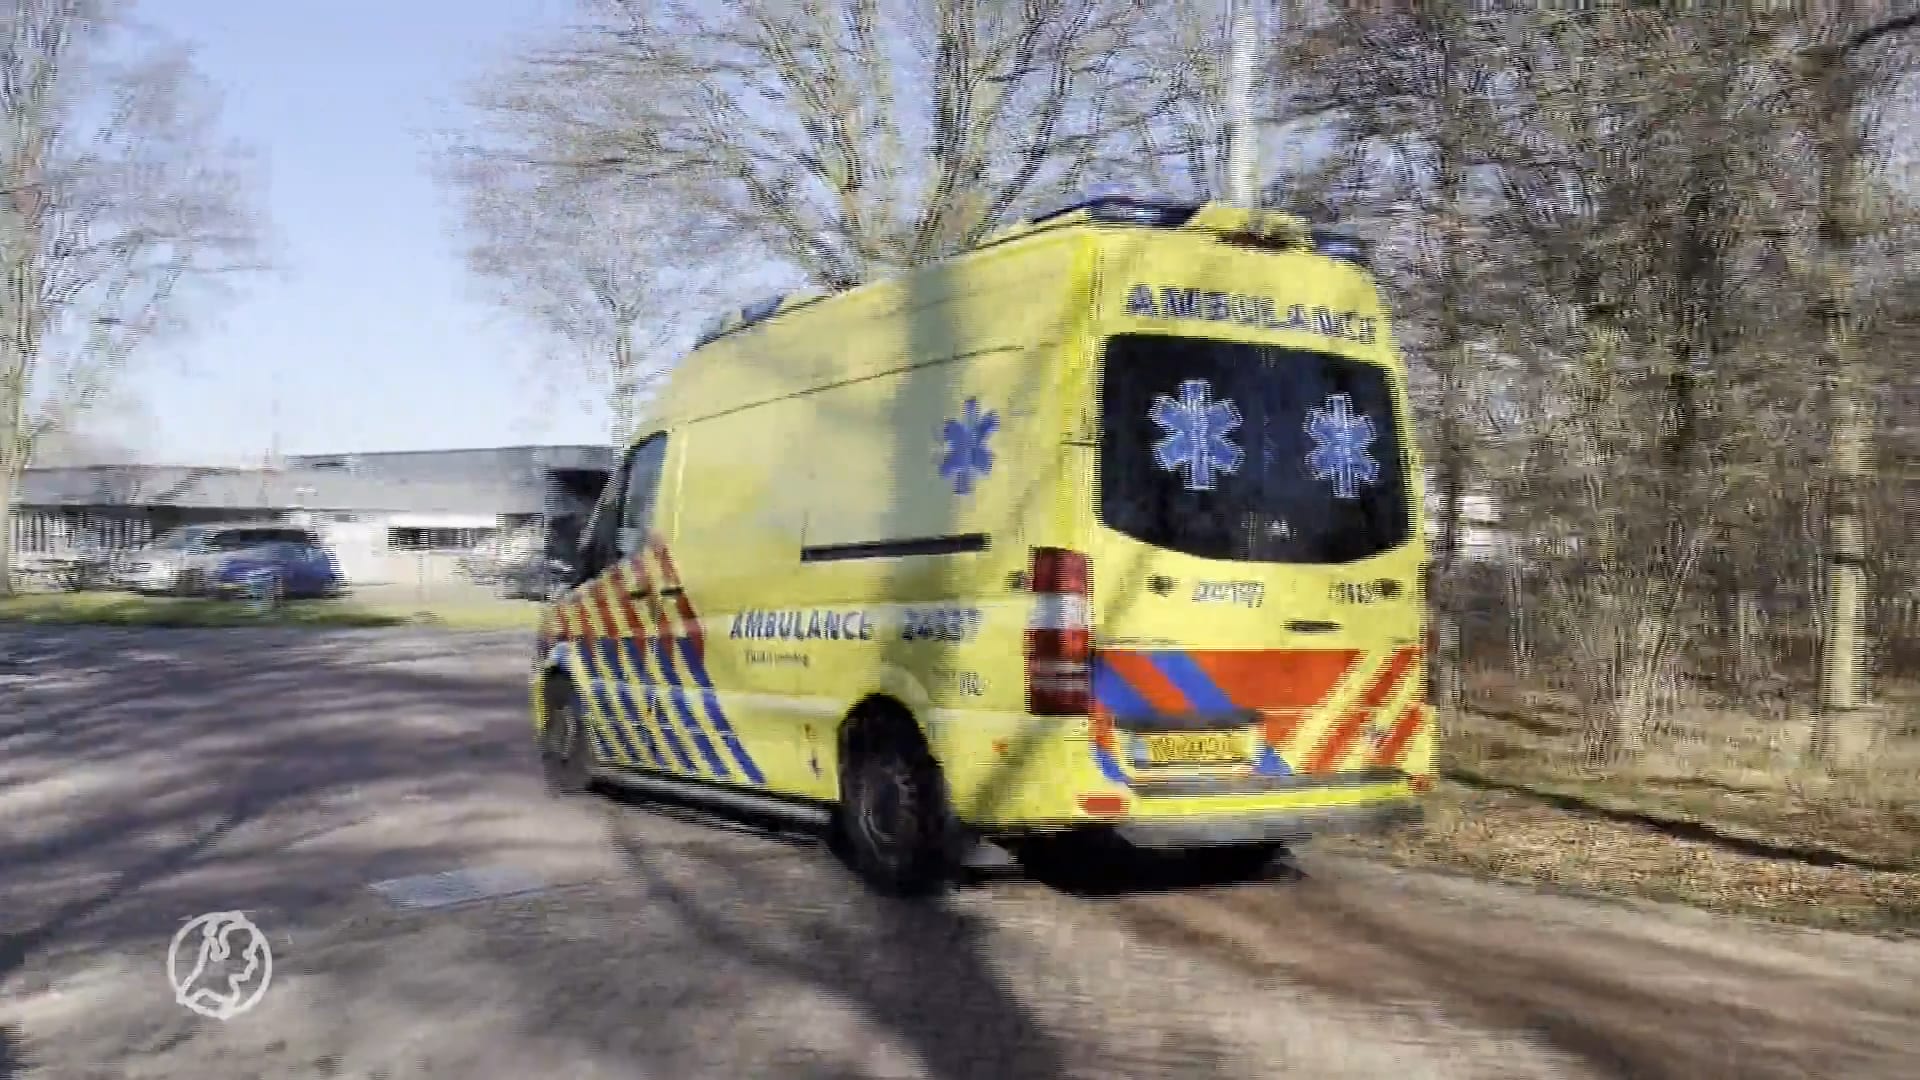 Monteur zwaargewond geraakt door een stroomstoot van laadpaal in Maastricht